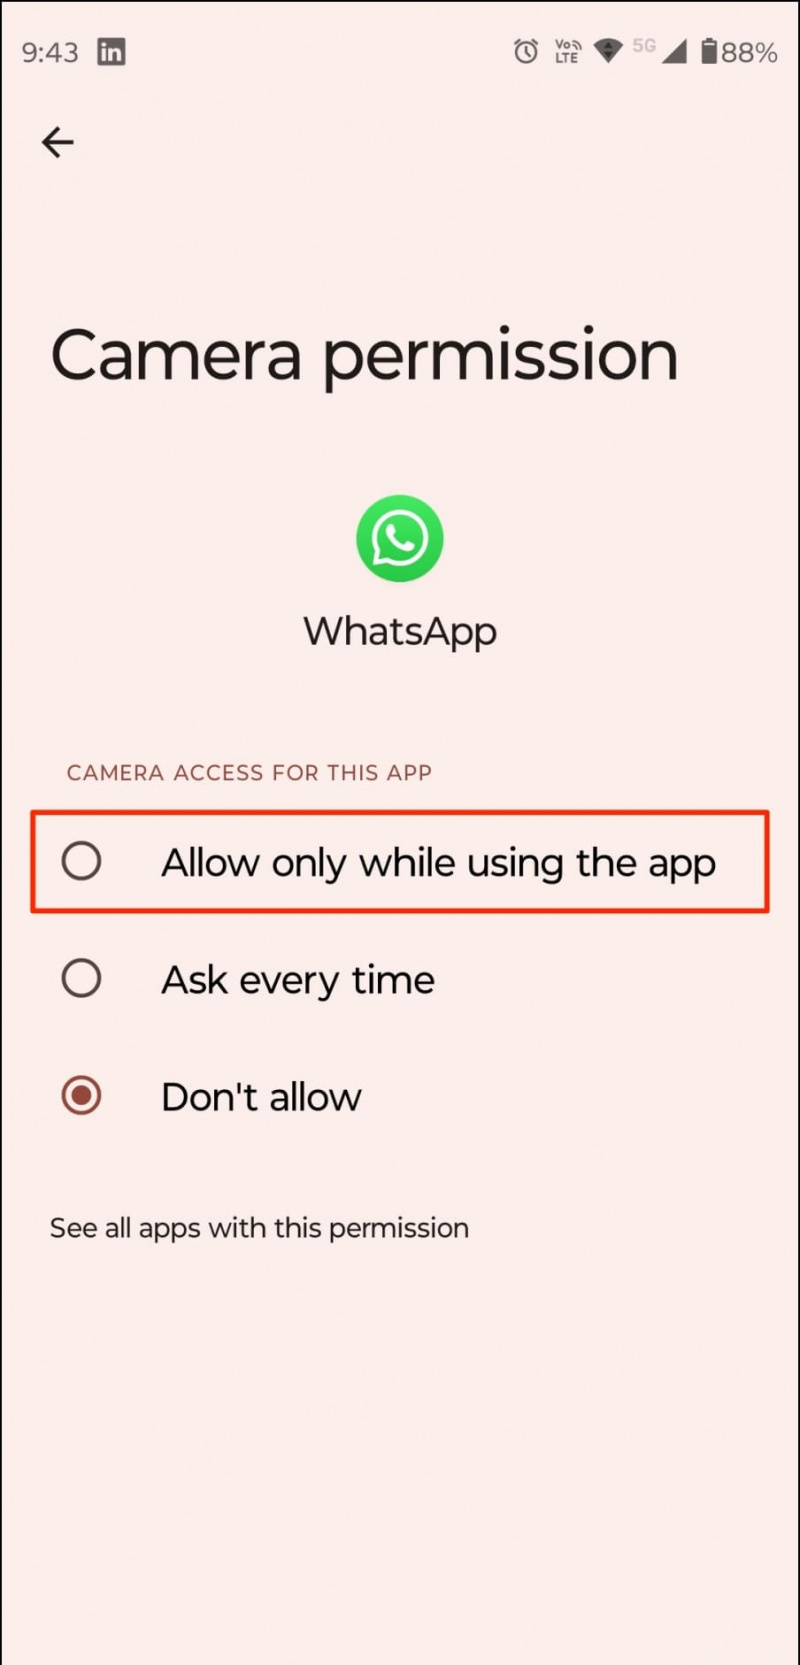   Autoriser l'accès à la caméra WhatsApp pour la connexion à deux appareils